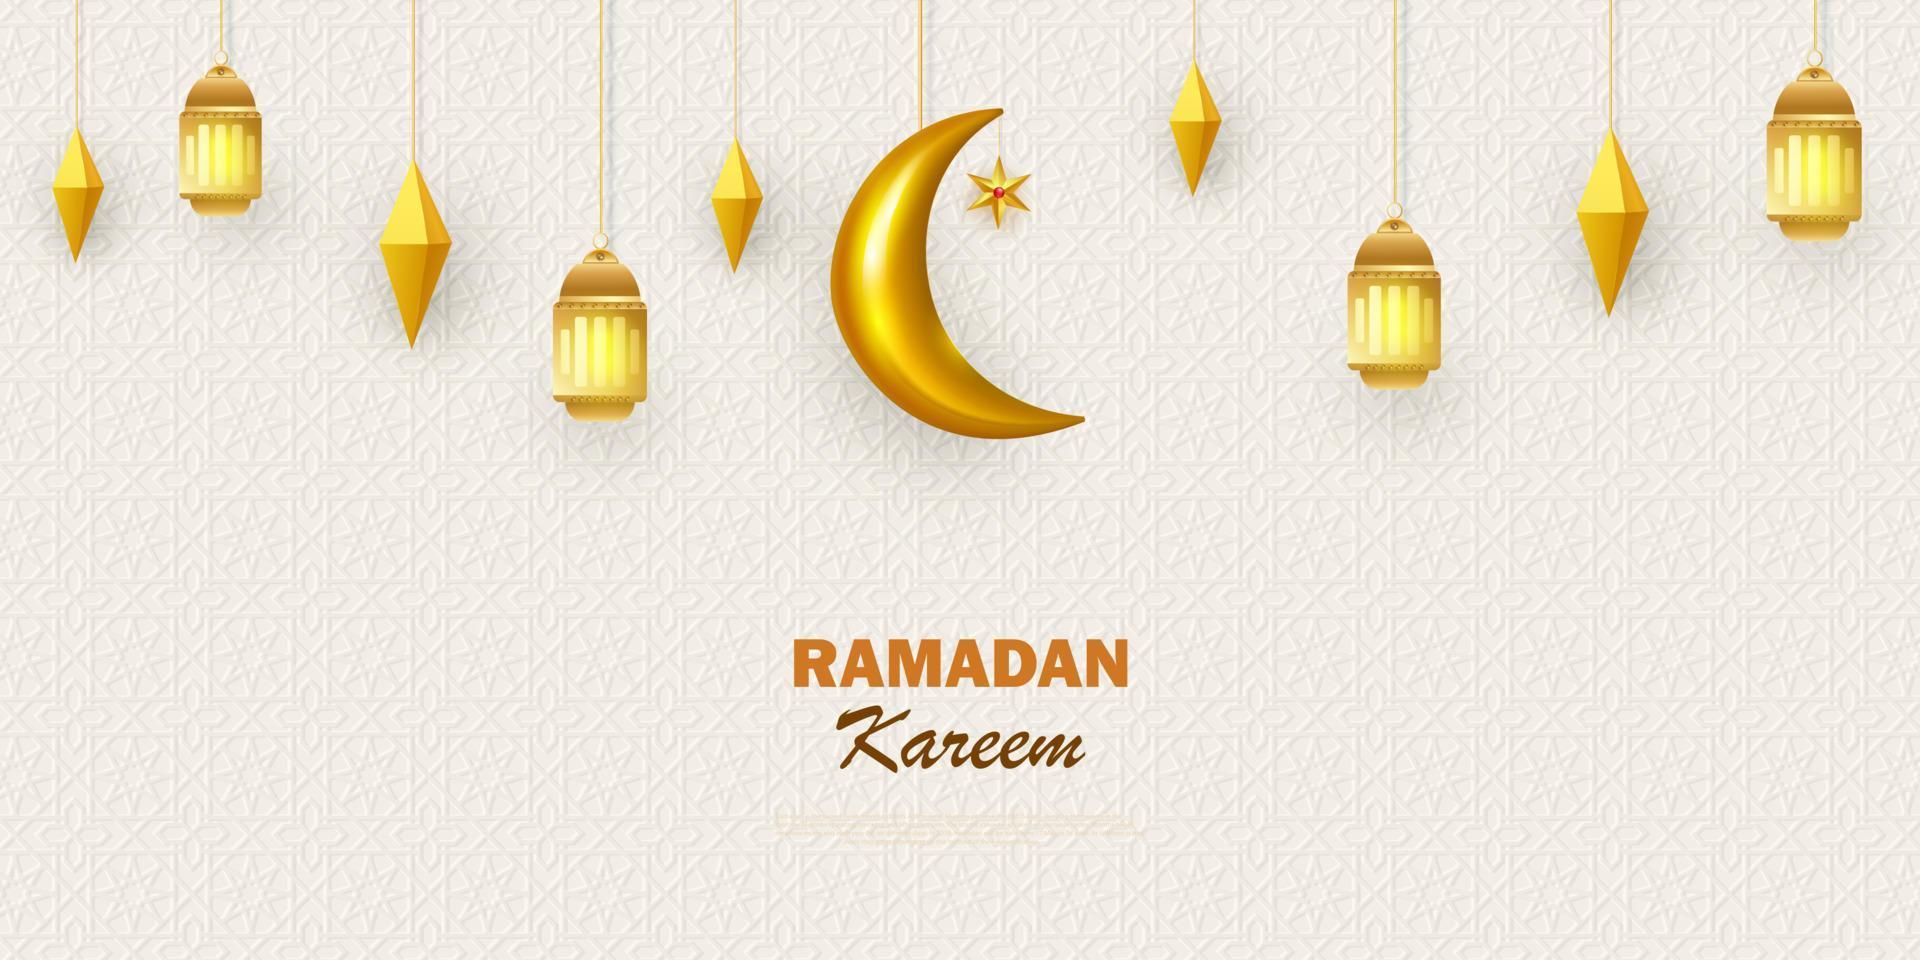 ramadan kareem koncept horisontell banner med islamiska geometriska mönster. traditionella gyllene lyktor, arabesker, måne och stjärnor. vektor illustration.